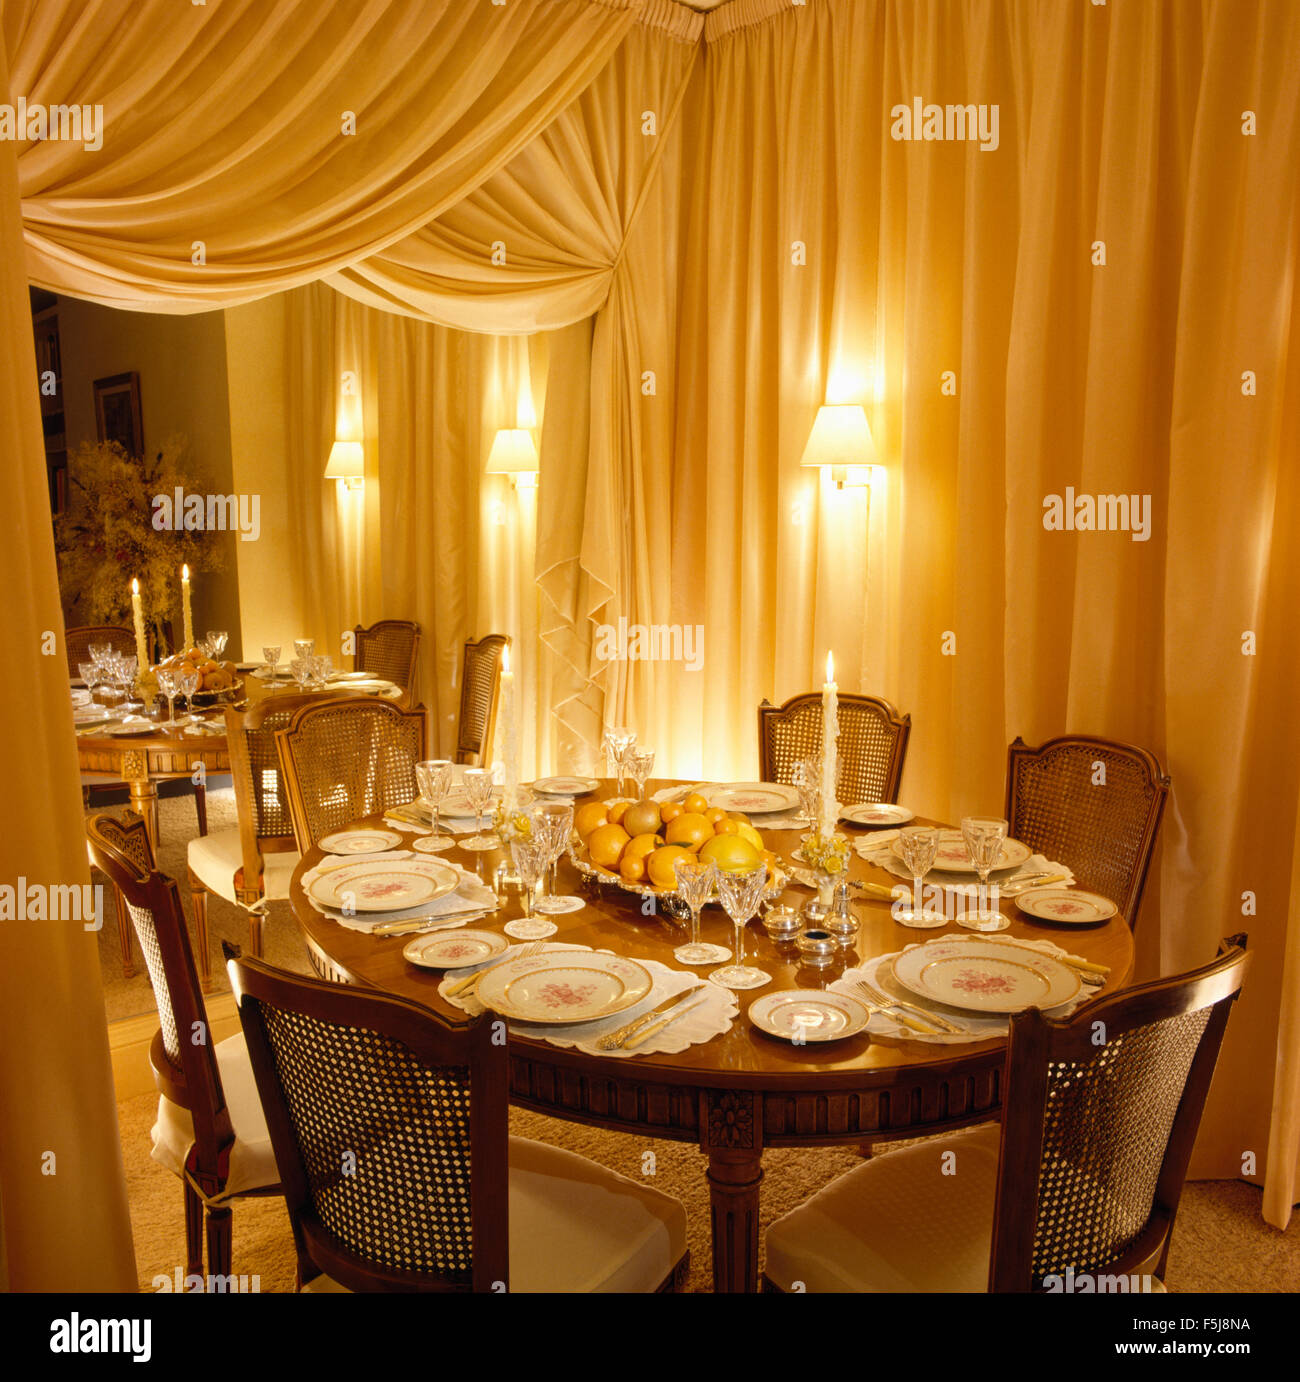 Drappeggi su parete specchiata negli ottanta sala da pranzo con le lampade accese sul tavolo per la cena Foto Stock